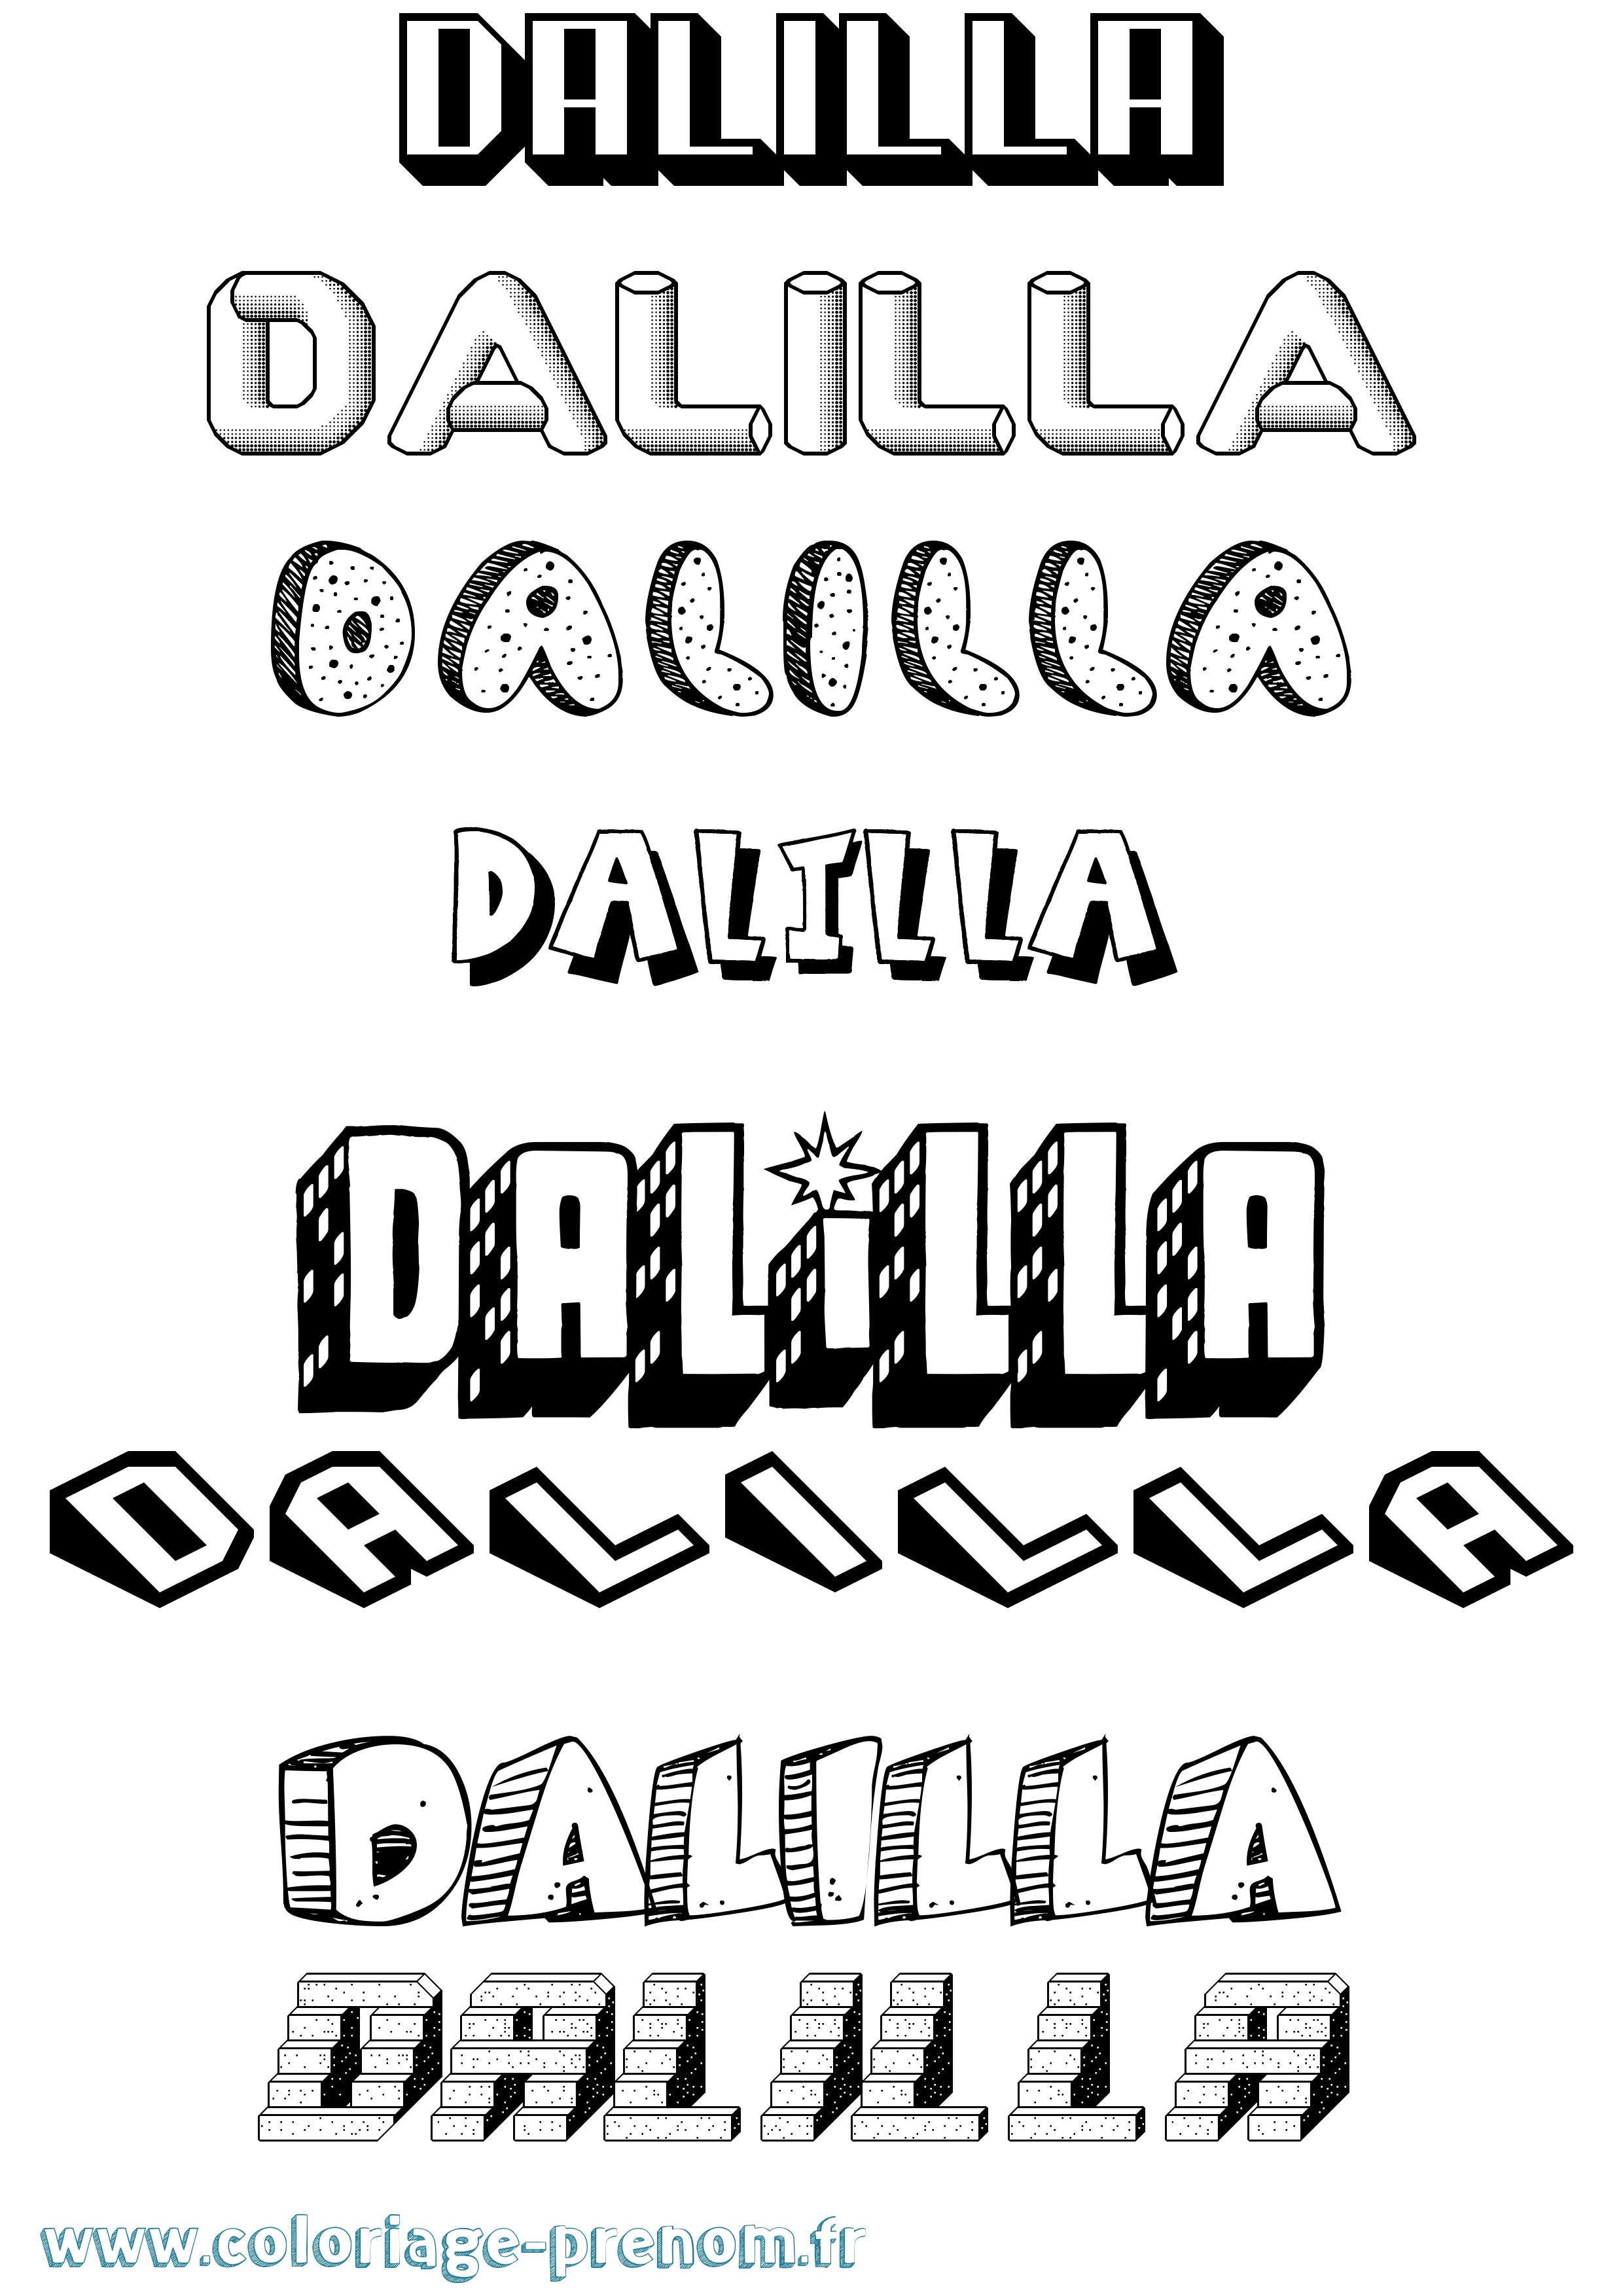 Coloriage prénom Dalilla Effet 3D